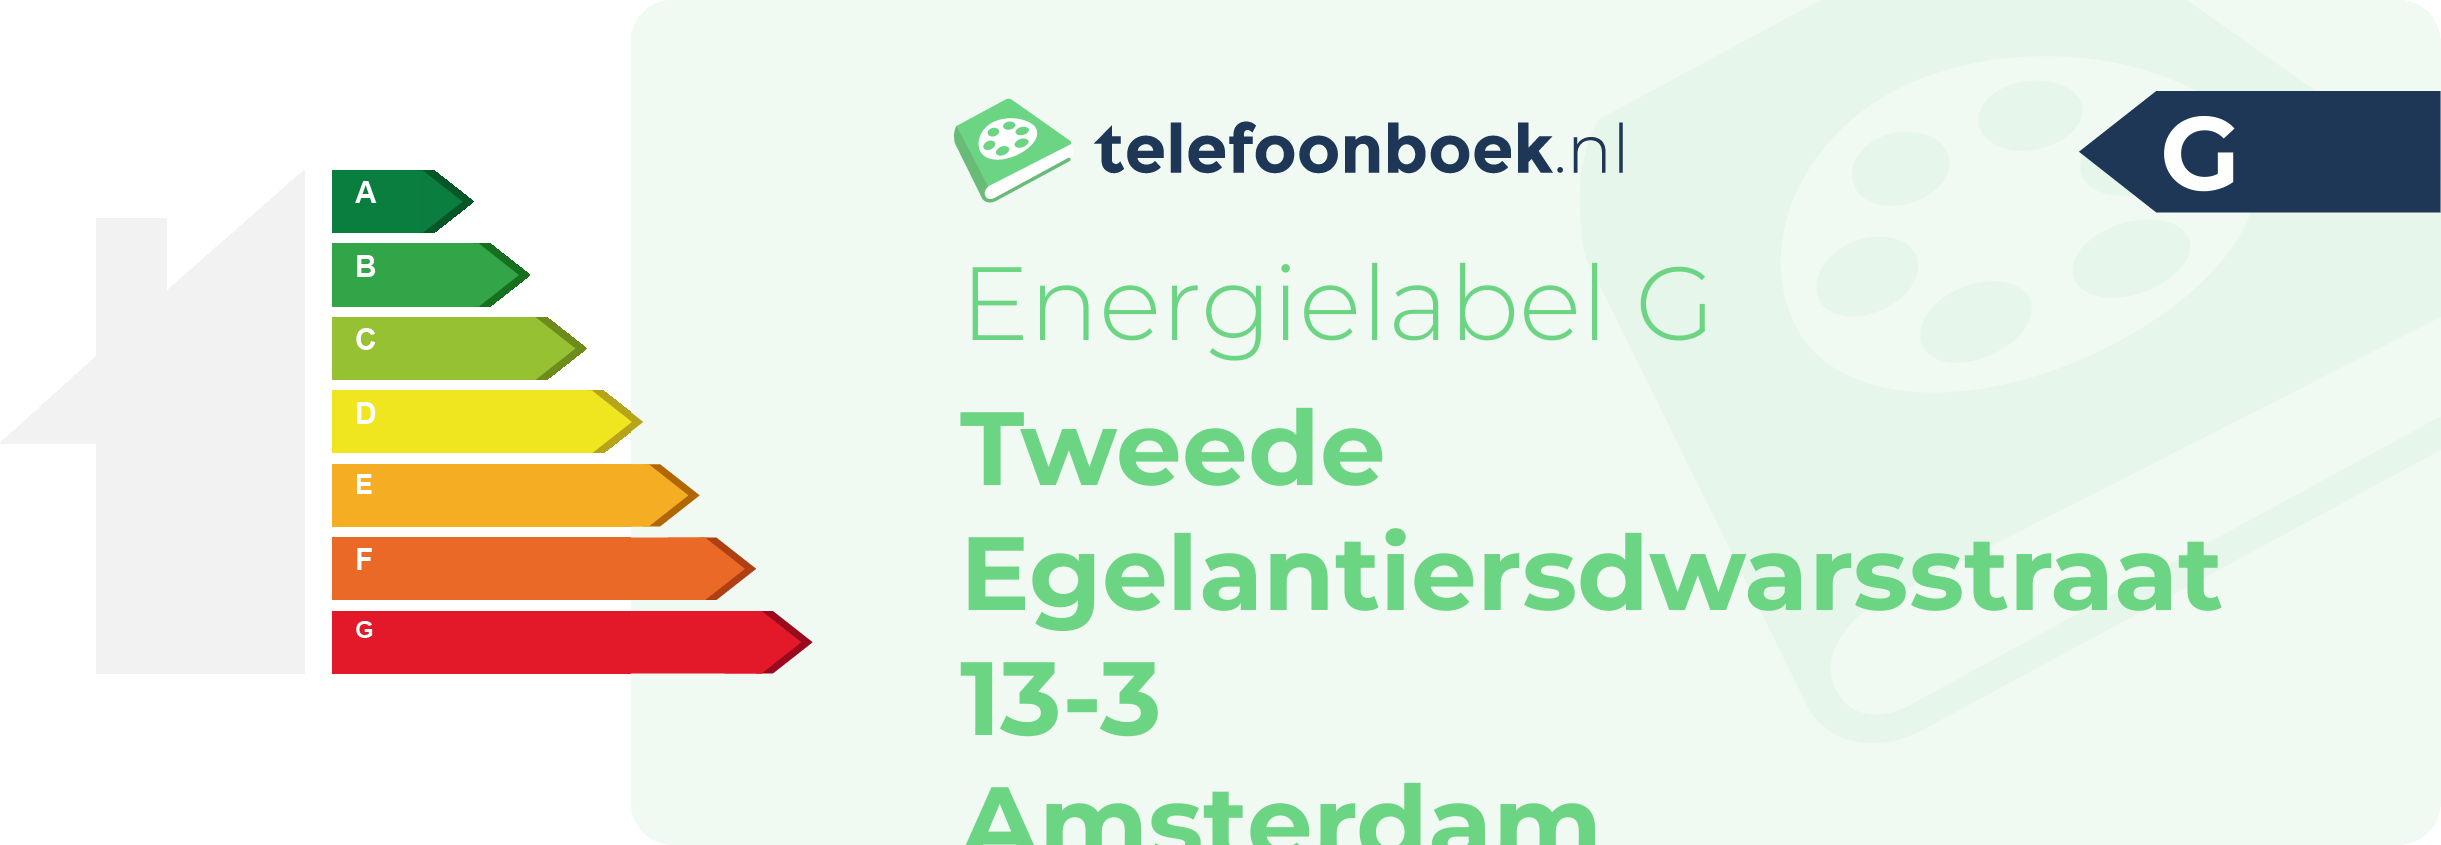 Energielabel Tweede Egelantiersdwarsstraat 13-3 Amsterdam